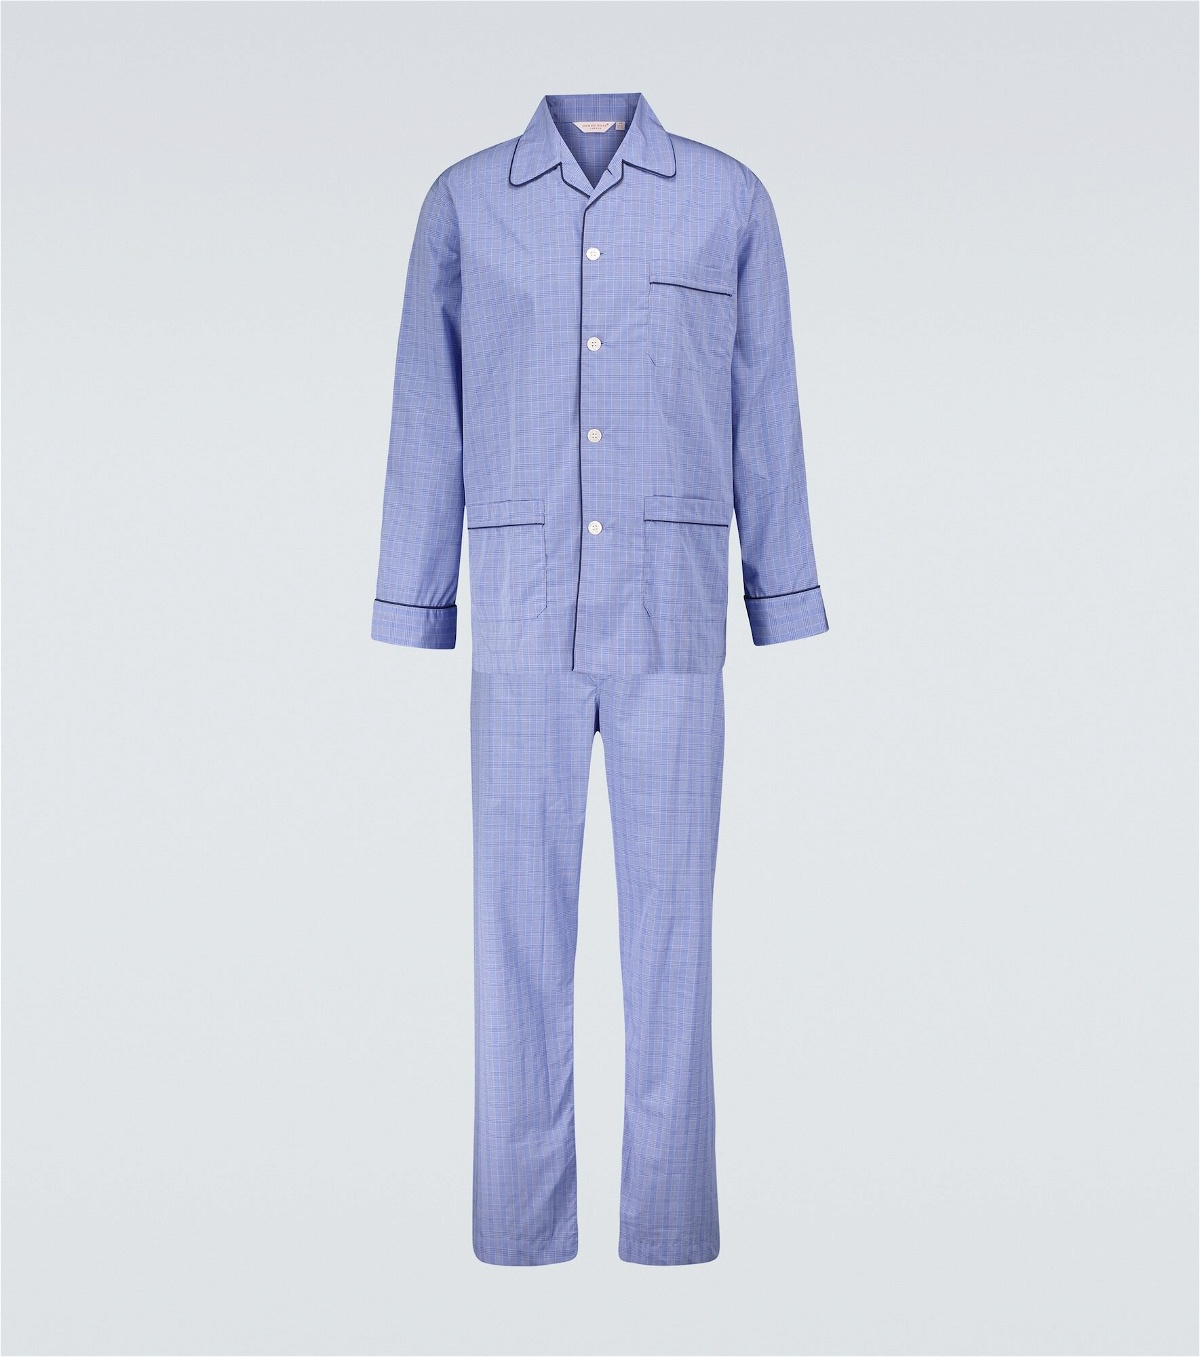 Derek Rose - Felsted 3 checked cotton pajama set Derek Rose